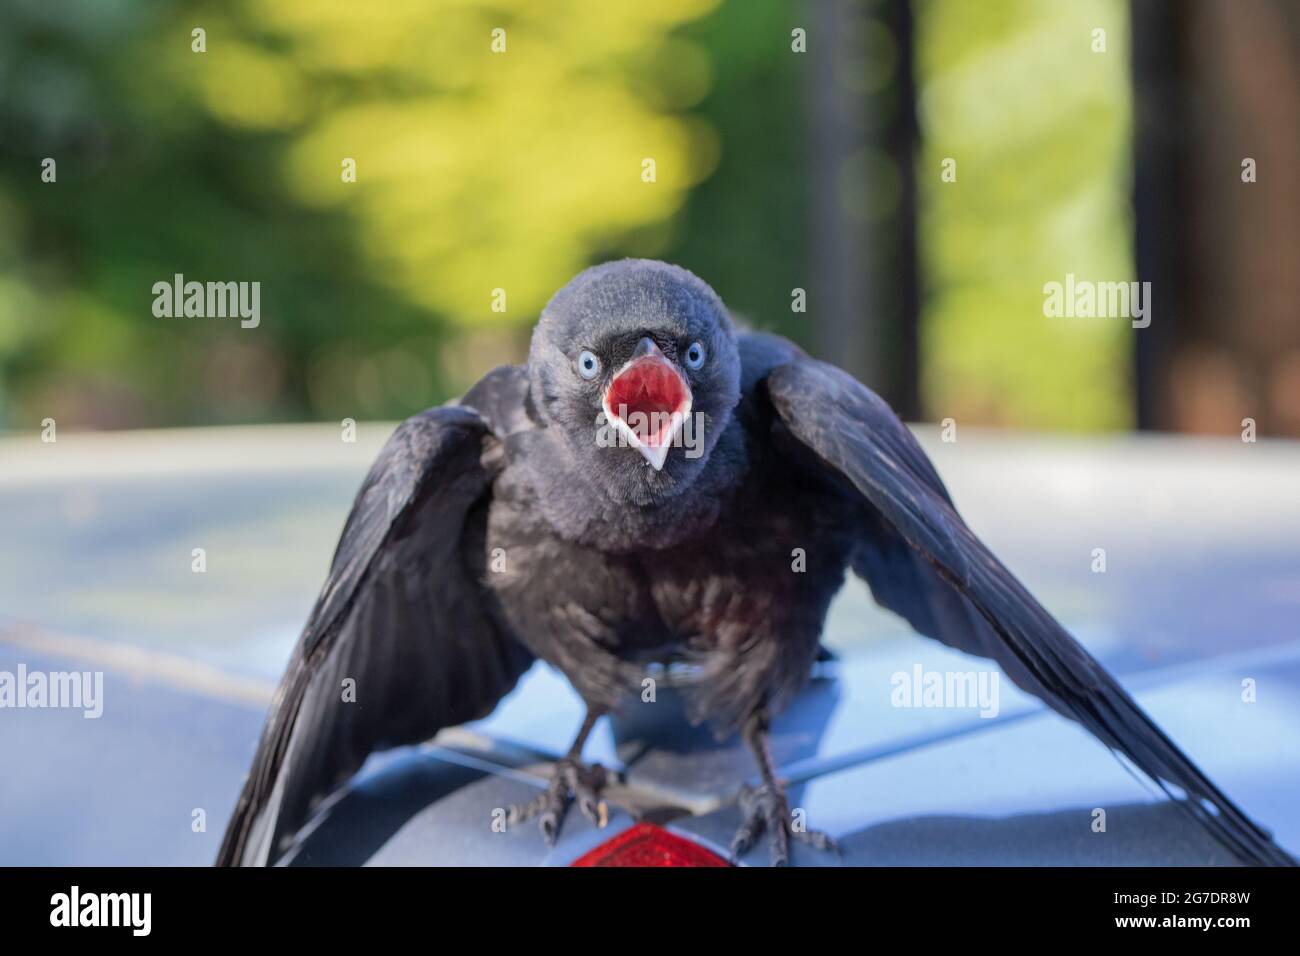 Junge Jackdaw (Corvus monedula). Der jüngste Nestflüchtler, ein flügges Jungtier, bettelte um Nahrung. Immer noch abhängig von der elterlichen Betreuung. Stockfoto